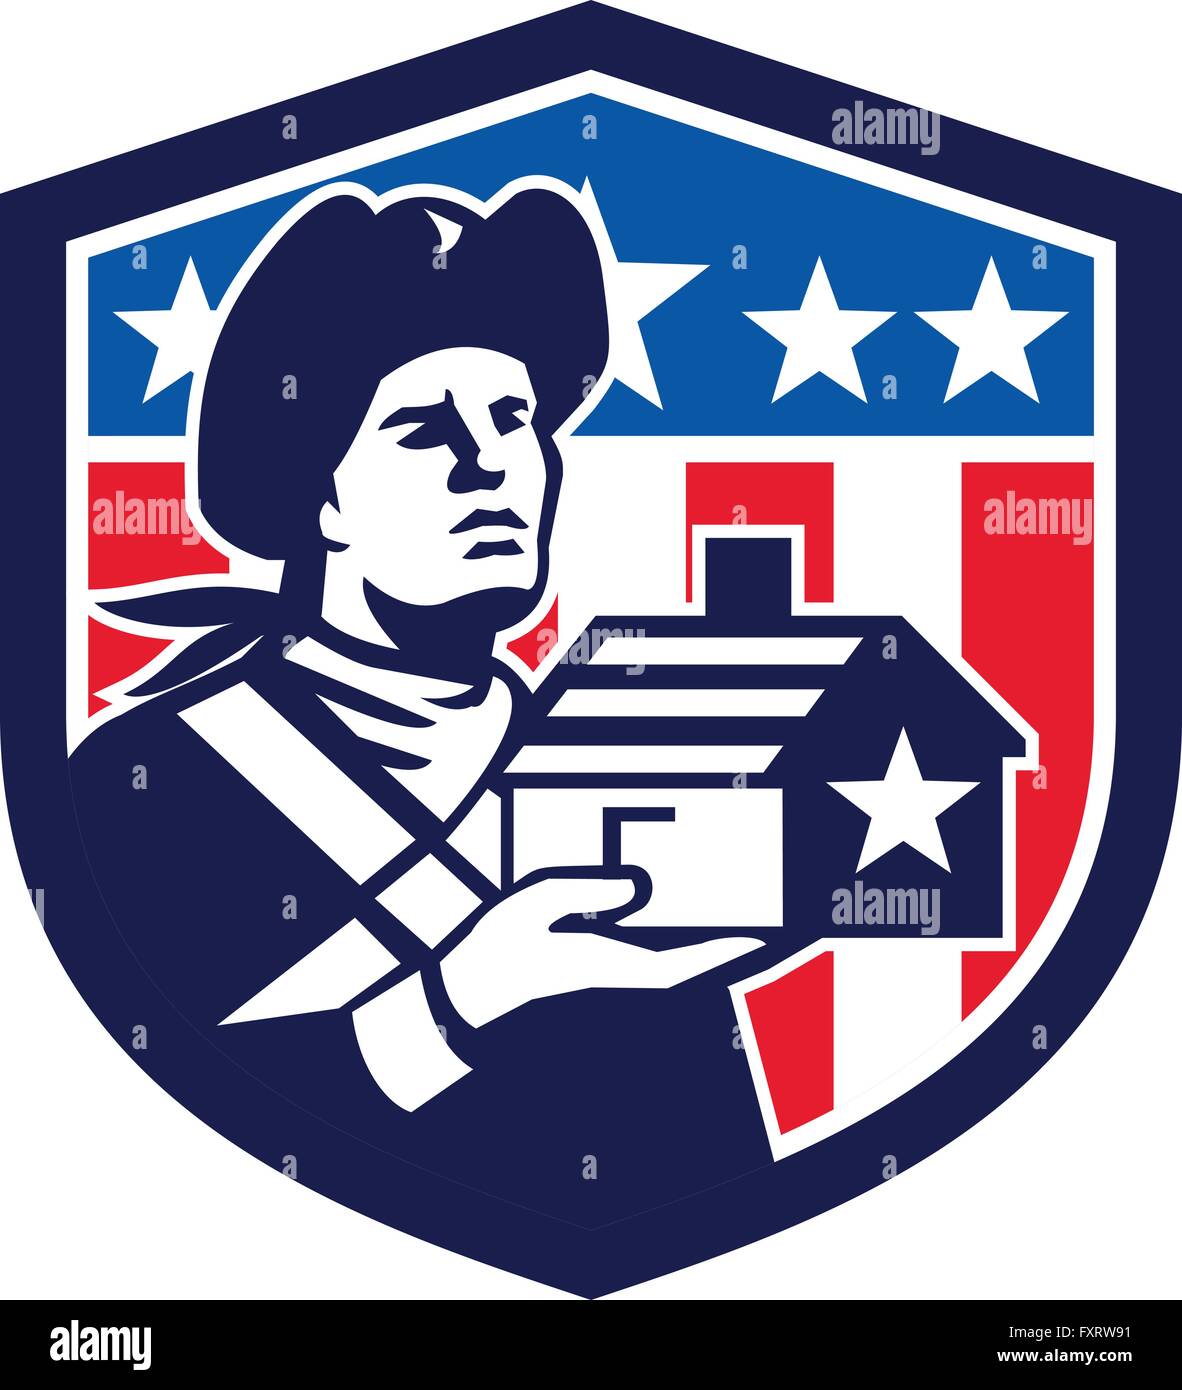 Illustrazione di un american patriot azienda house con strisce e stelle di design insieme all'interno della protezione con american bandiera degli stati uniti in background fatto in stile retrò. Illustrazione Vettoriale